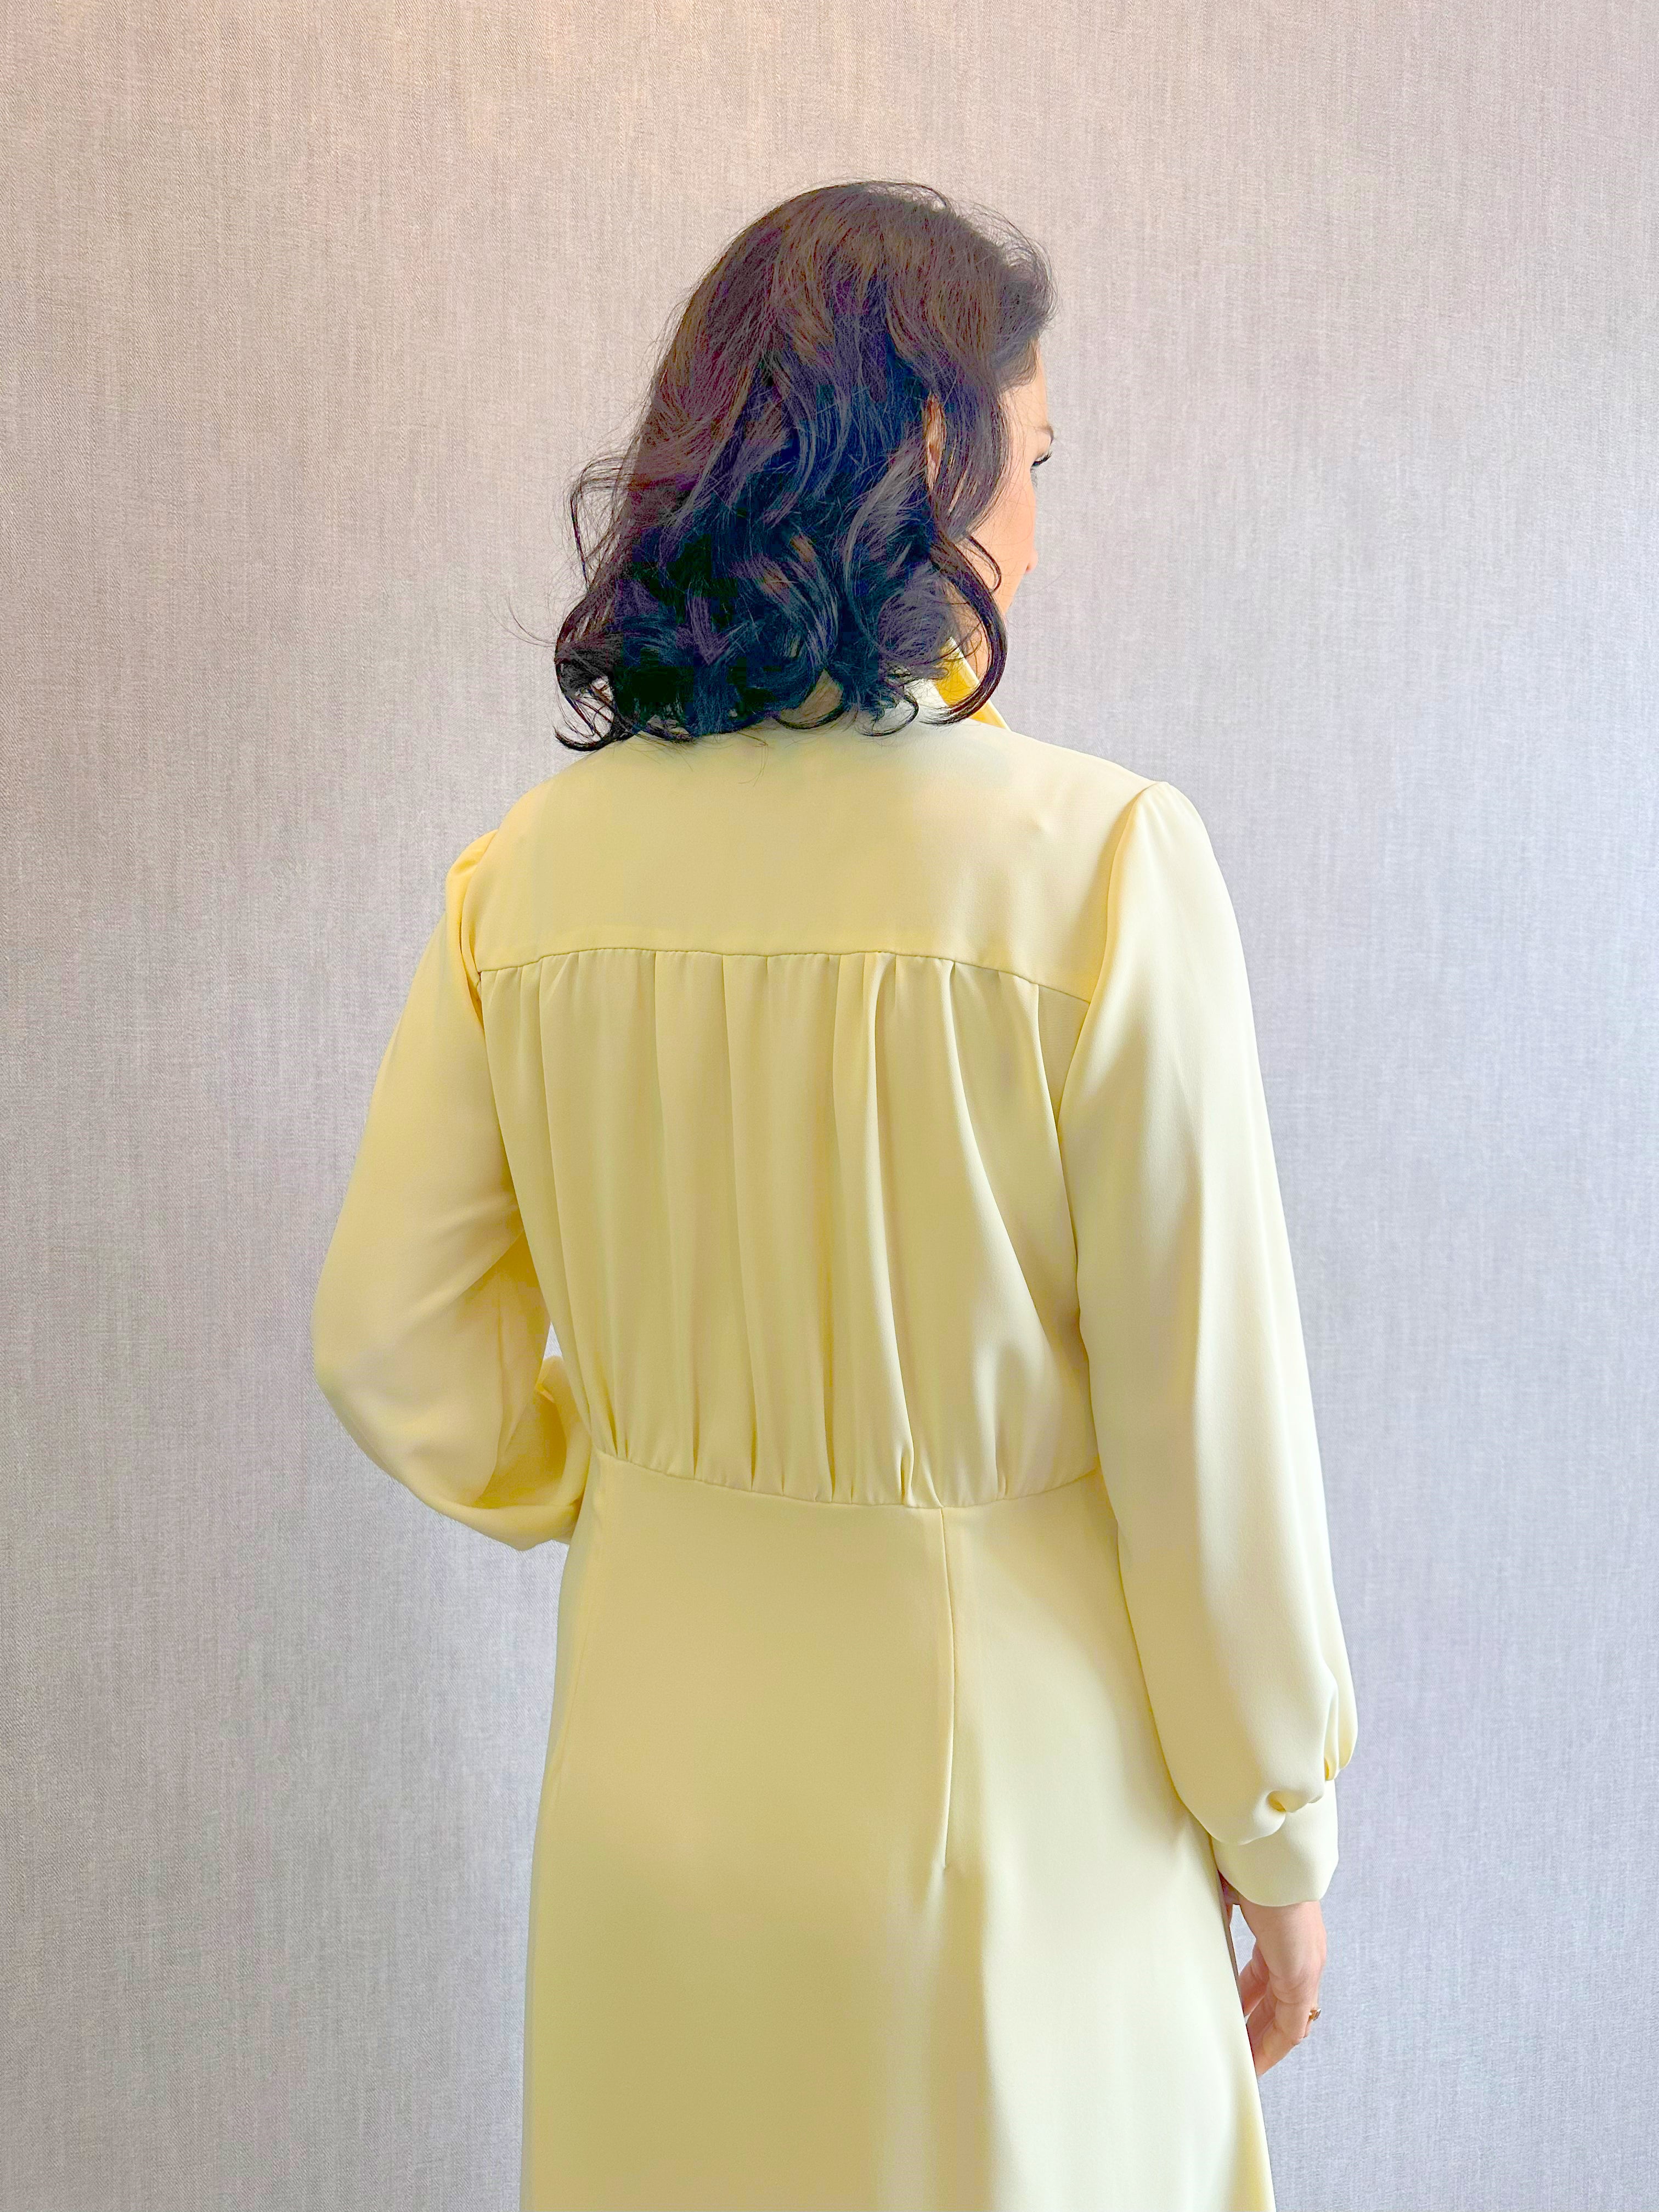 Pastelové šaty s límečkem - žluté